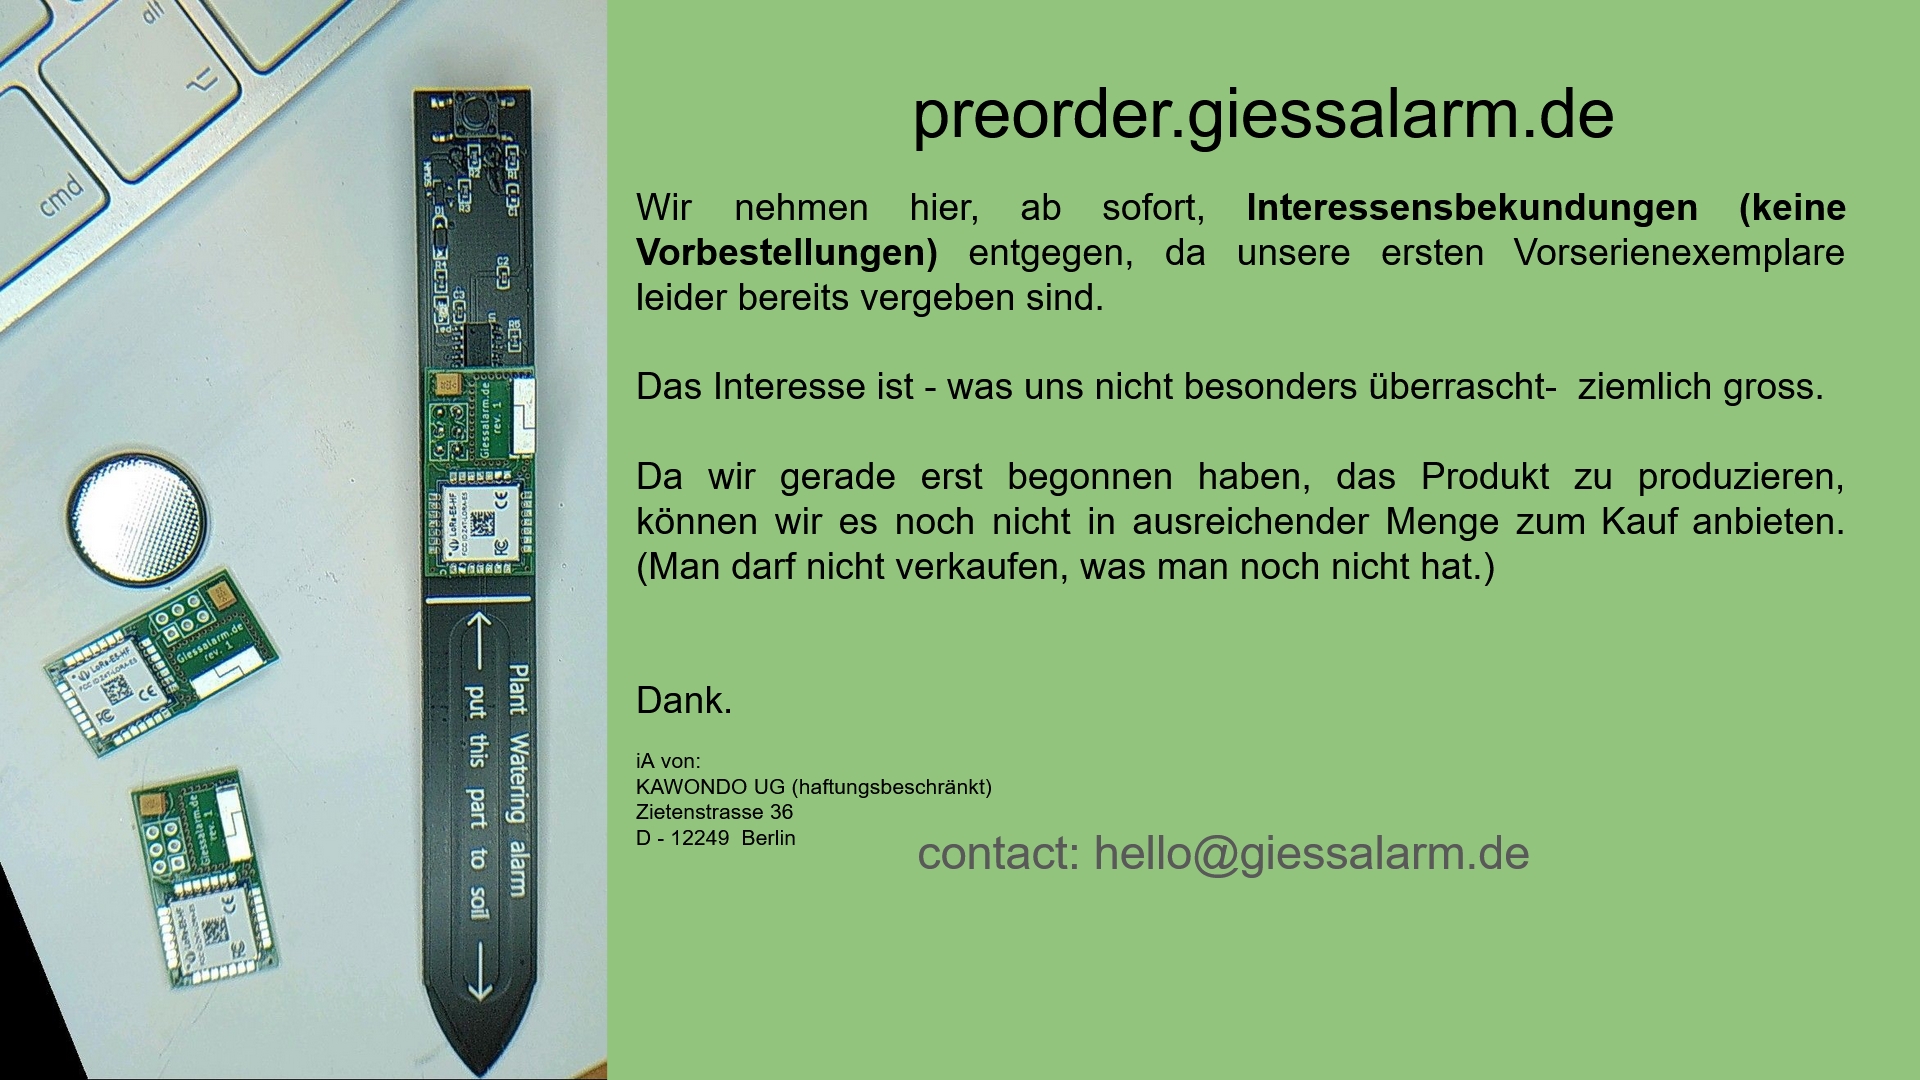 www.giessalarm.de